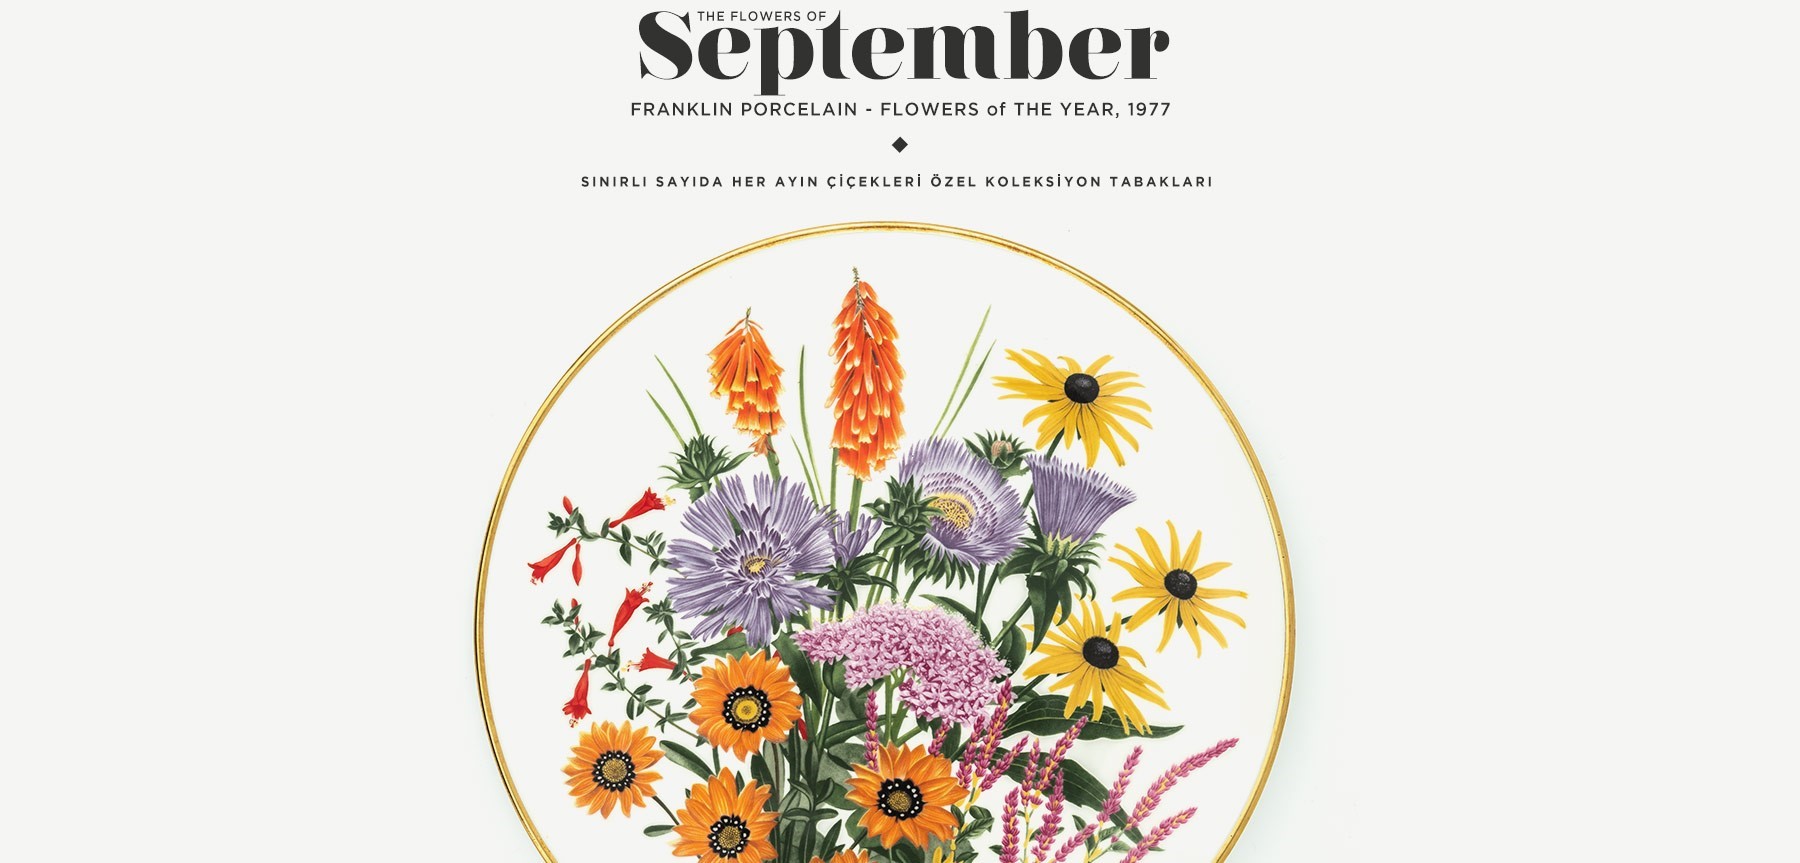 Eylül'de Açan Çiçekler The Flowers Of September'in resmi